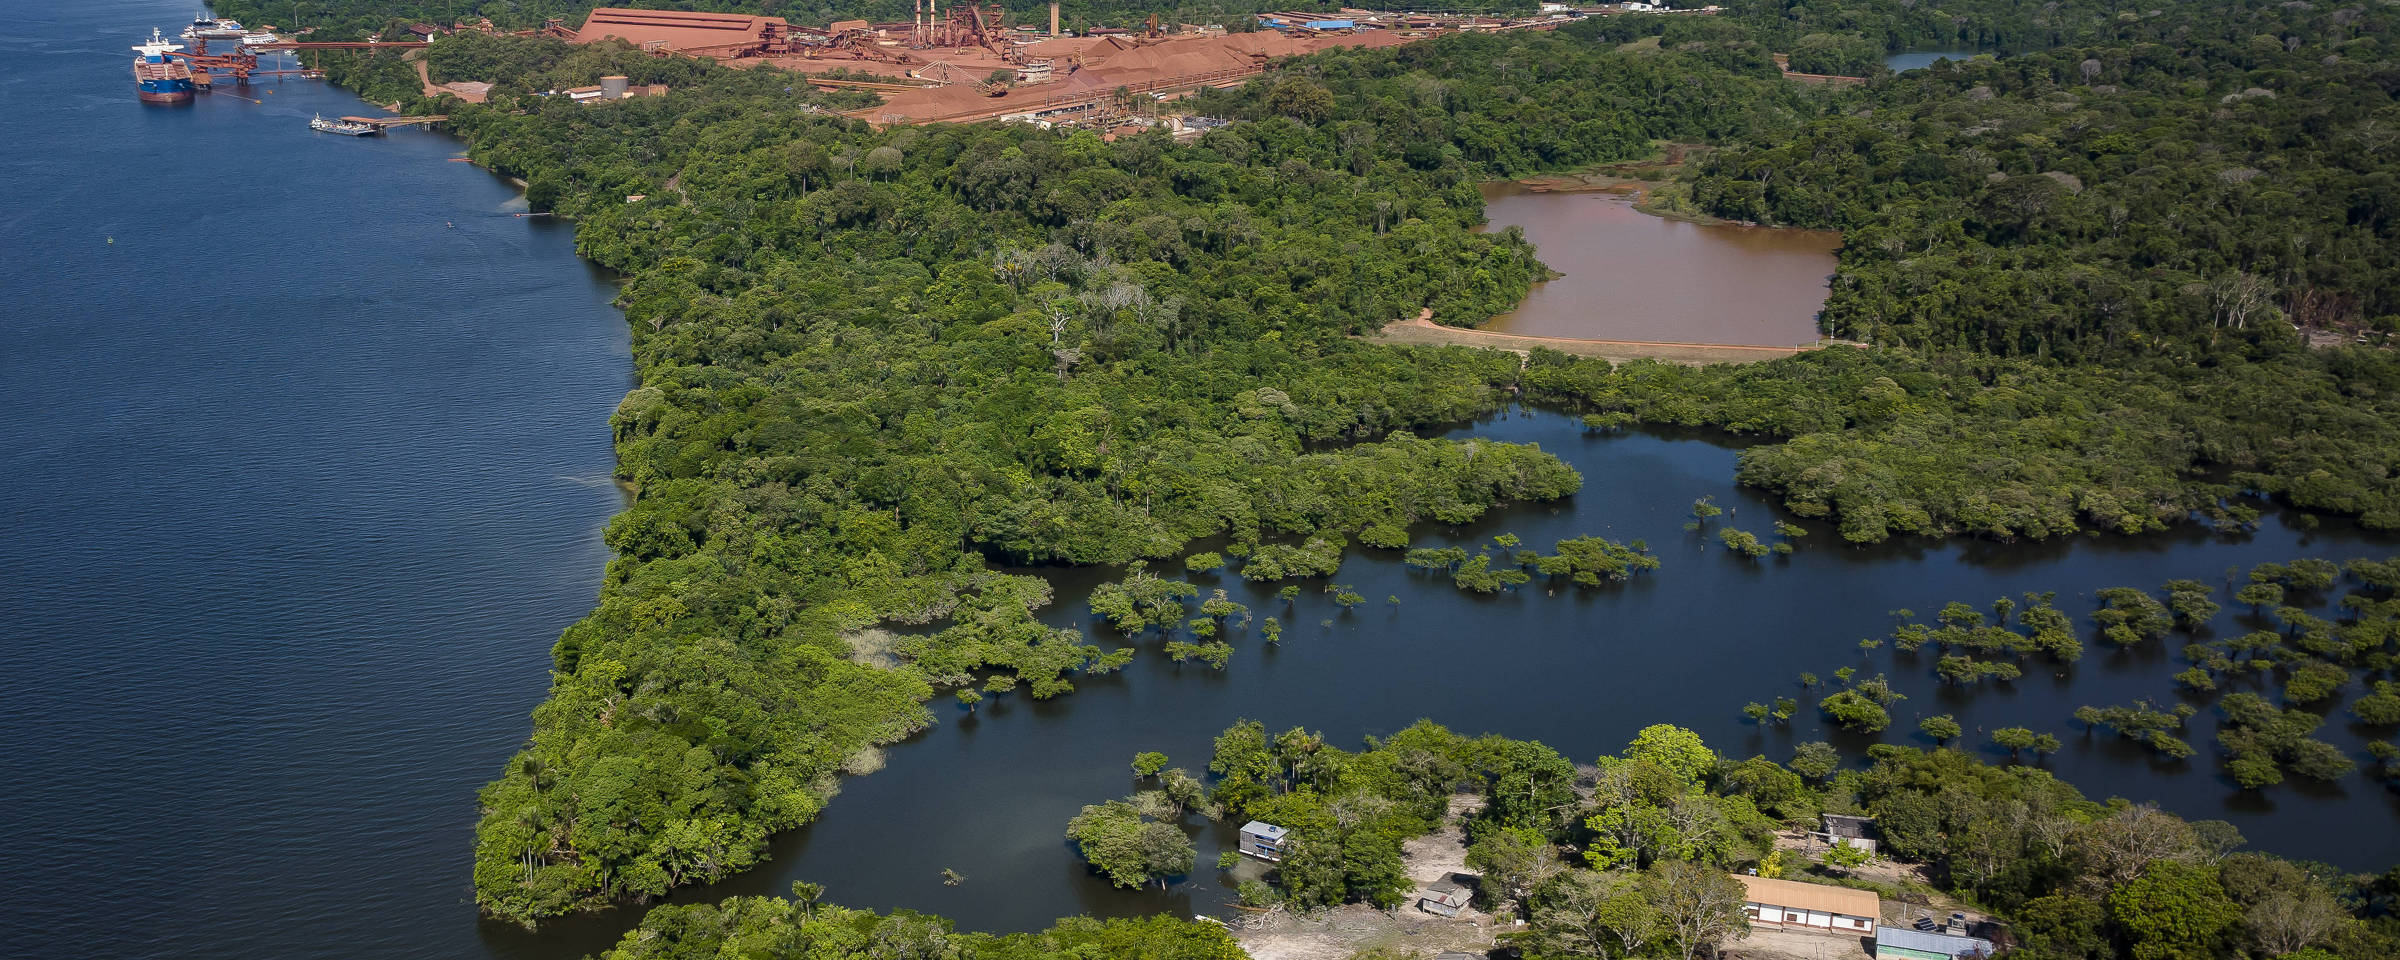 Vista aérea do quilombo (abaixo), a barragem de rejeitos da mineradora mais ao centro e o porto de carregamento de bauxita (acima).